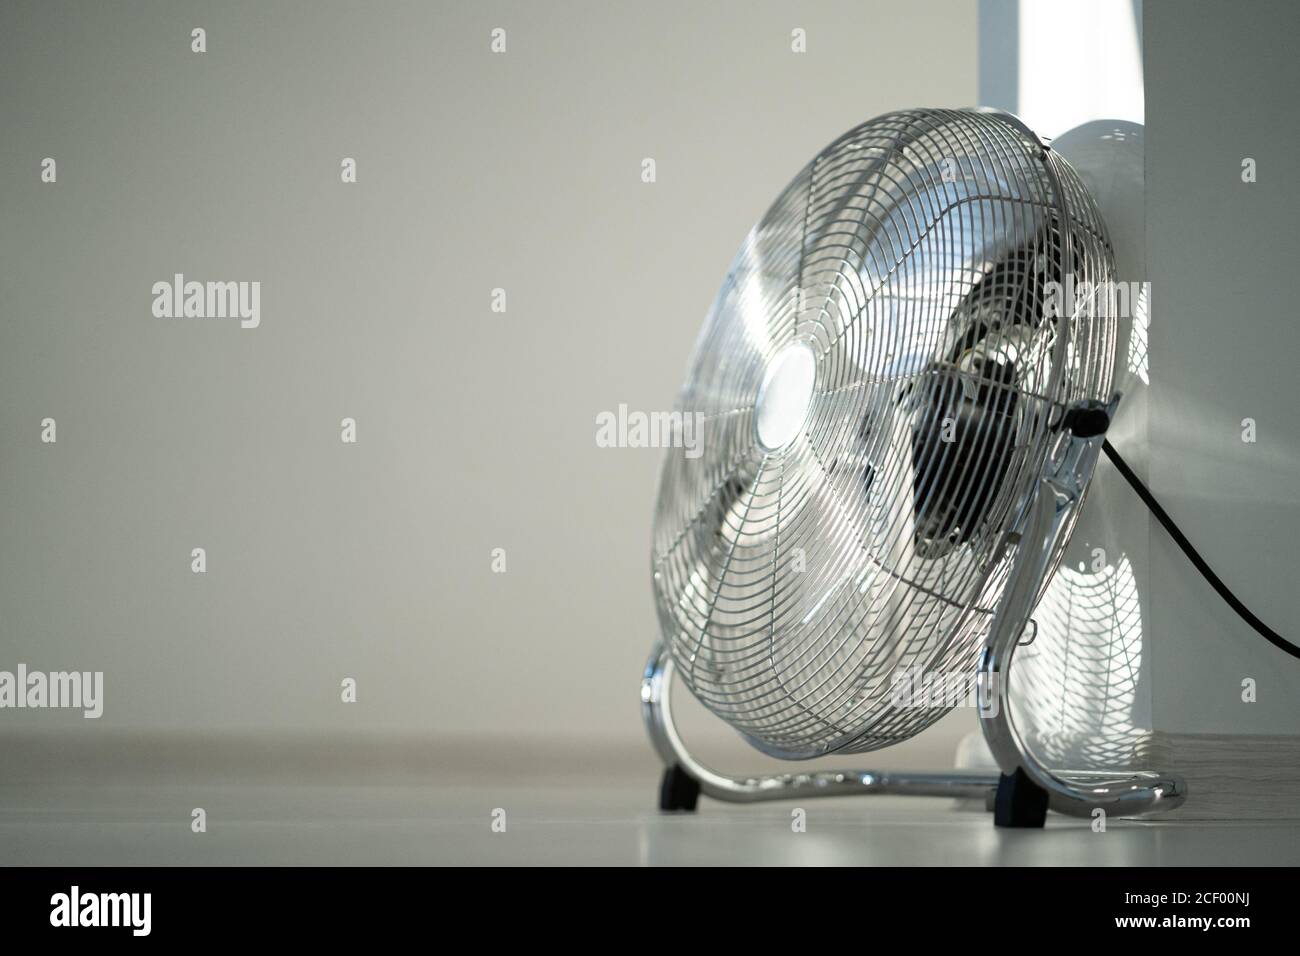 Ventilateur de ventilation en métal argenté sur parquet à la maison. Espace de copie Banque D'Images